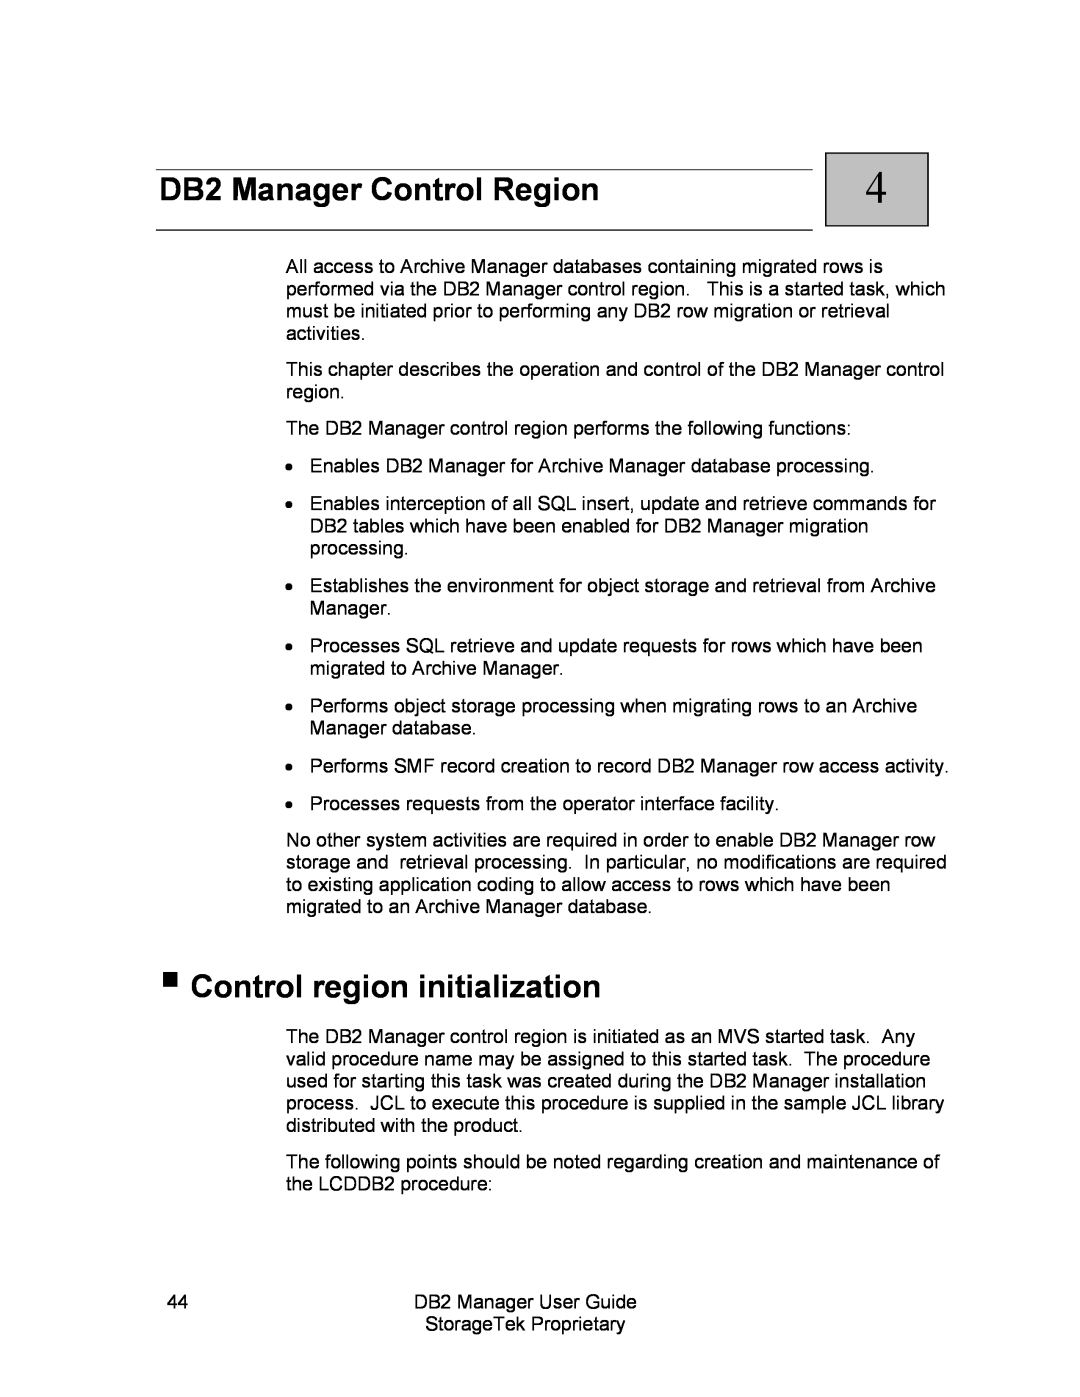 StorageTek 312564001 manual DB2 Manager Control Region, Control region initialization 